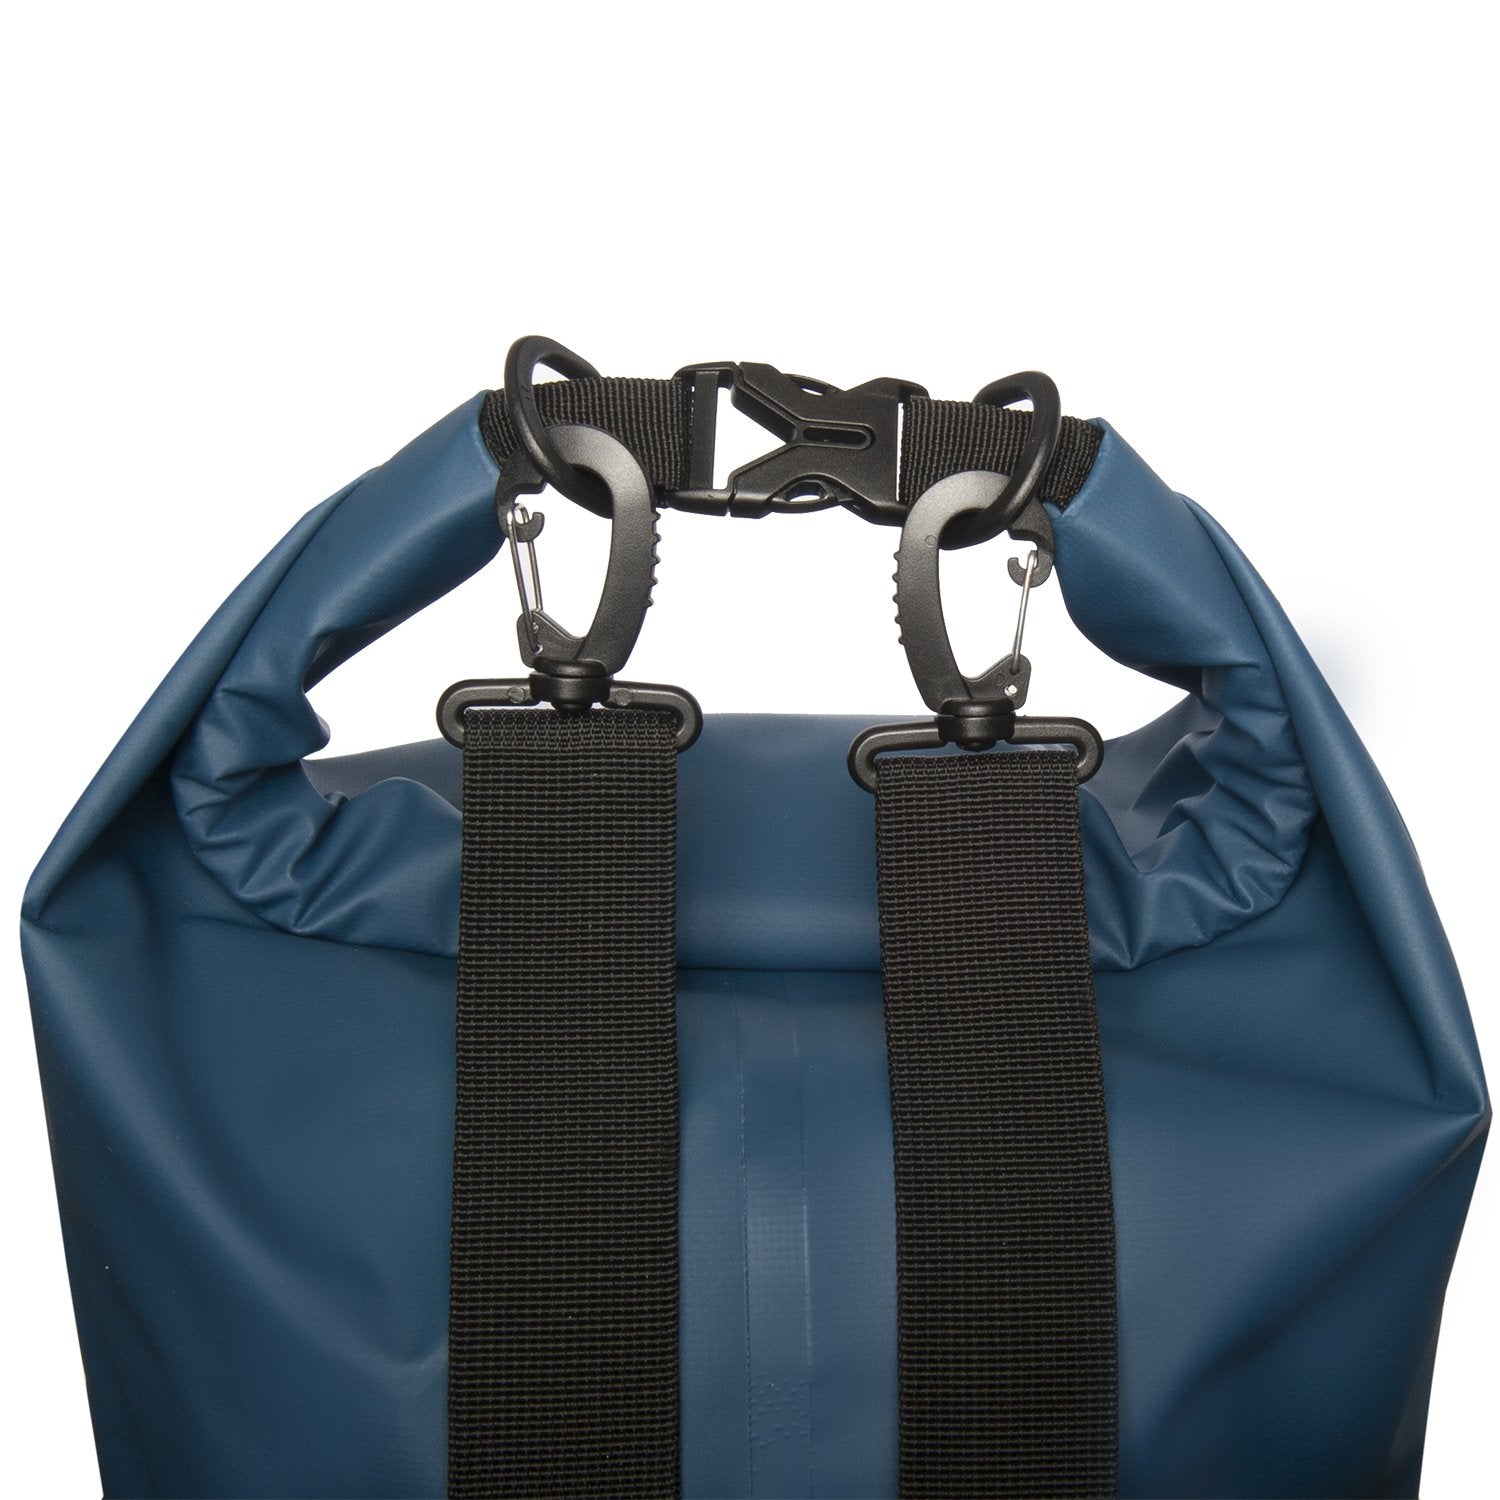 Waterproof Dry Bags